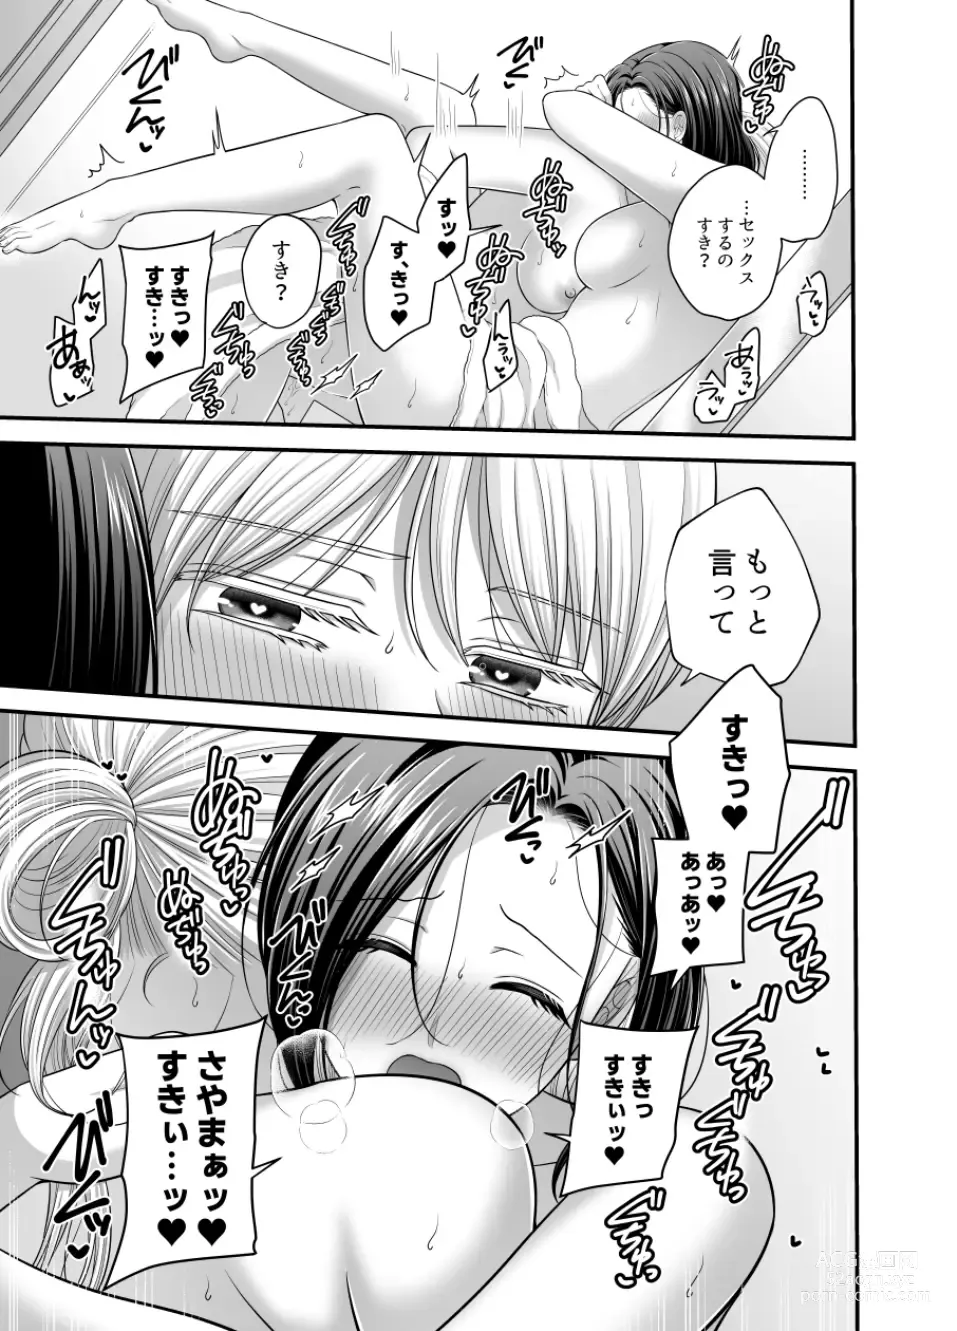 Page 1153 of doujinshi Aishite Ii no wa, Karada dake